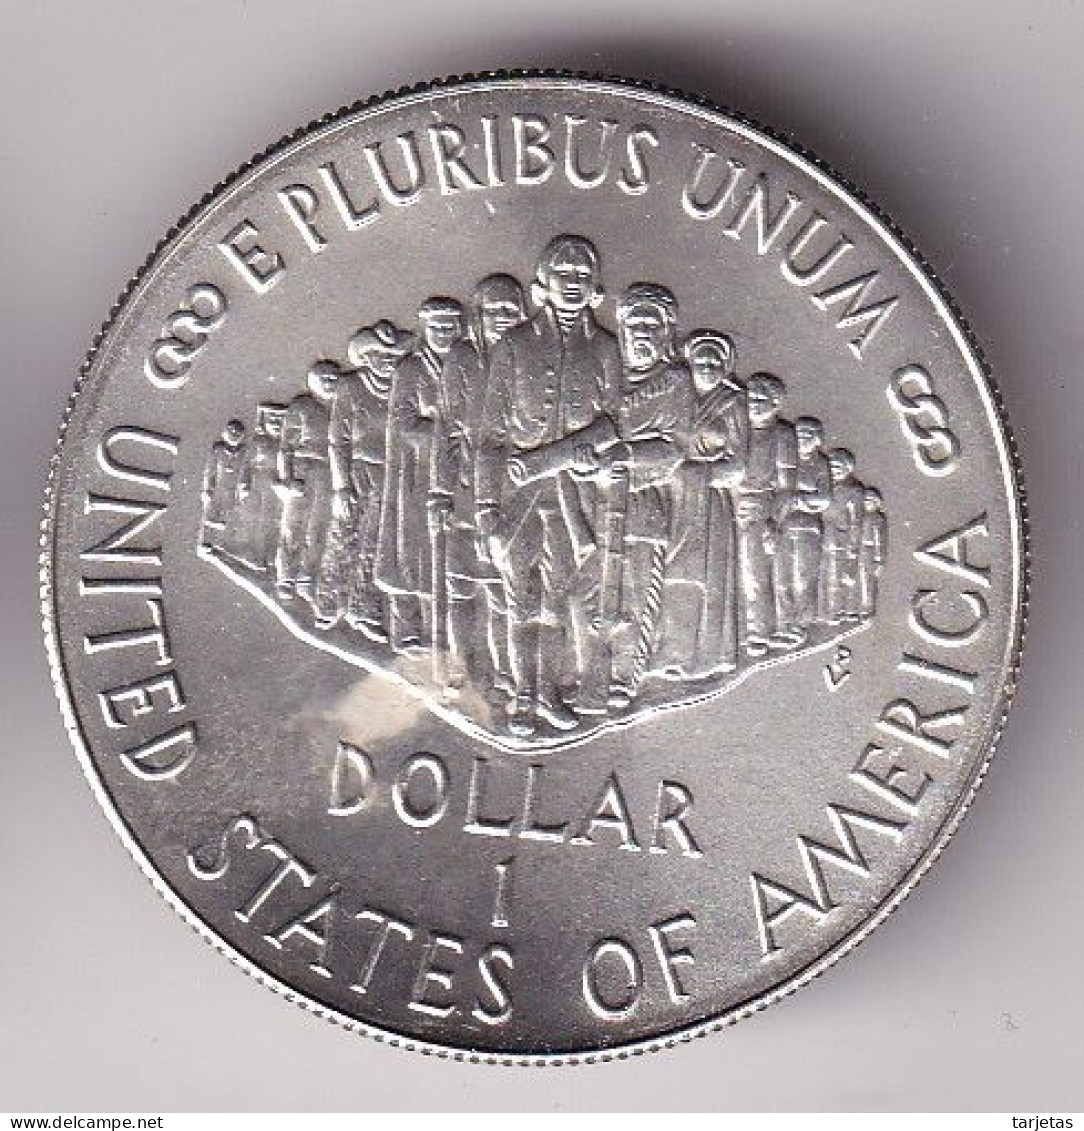 MONEDA DE PLATA DE ESTADOS UNIDOS DE 1 DOLLAR DEL AÑO 1987 (SILVER-ARGENT) - Gedenkmünzen